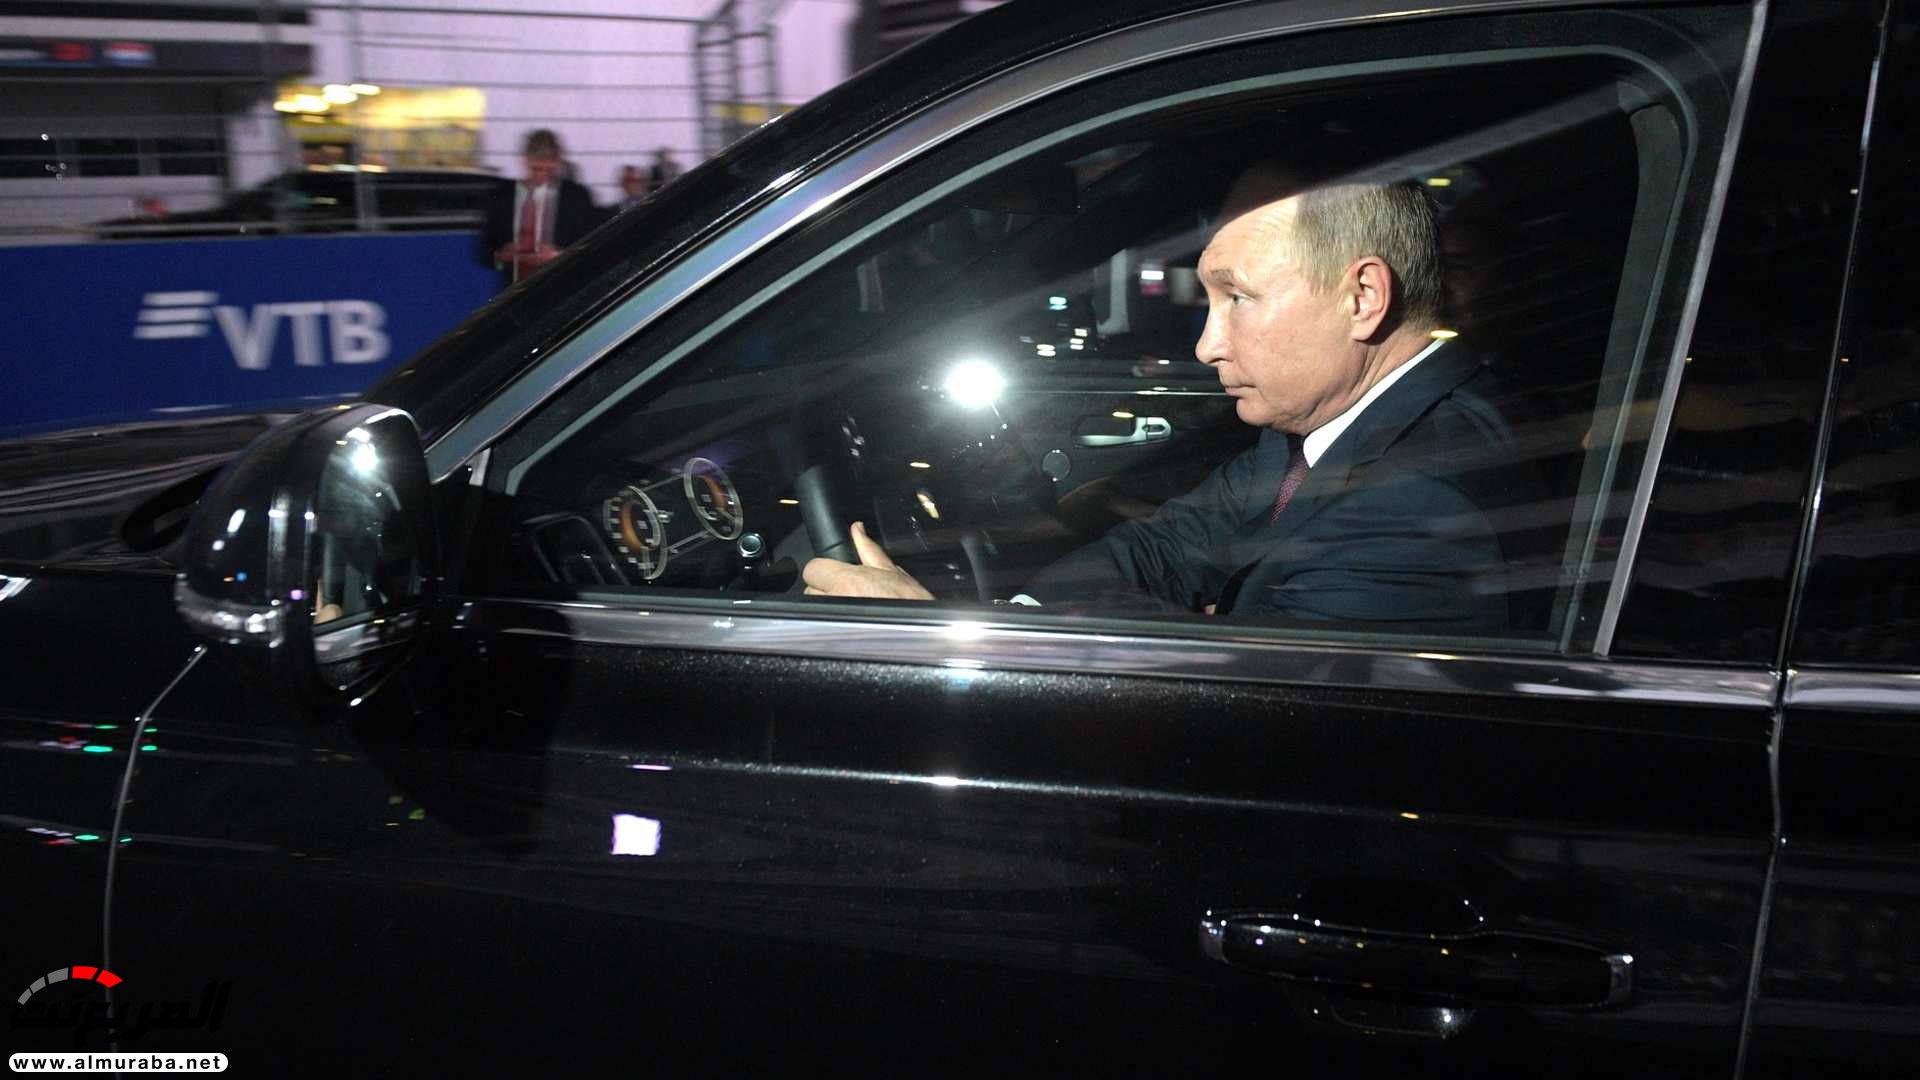 "بالصور" بوتين يصطحب السيسي في جولة داخل ليموزين يقودها بنفسه 24